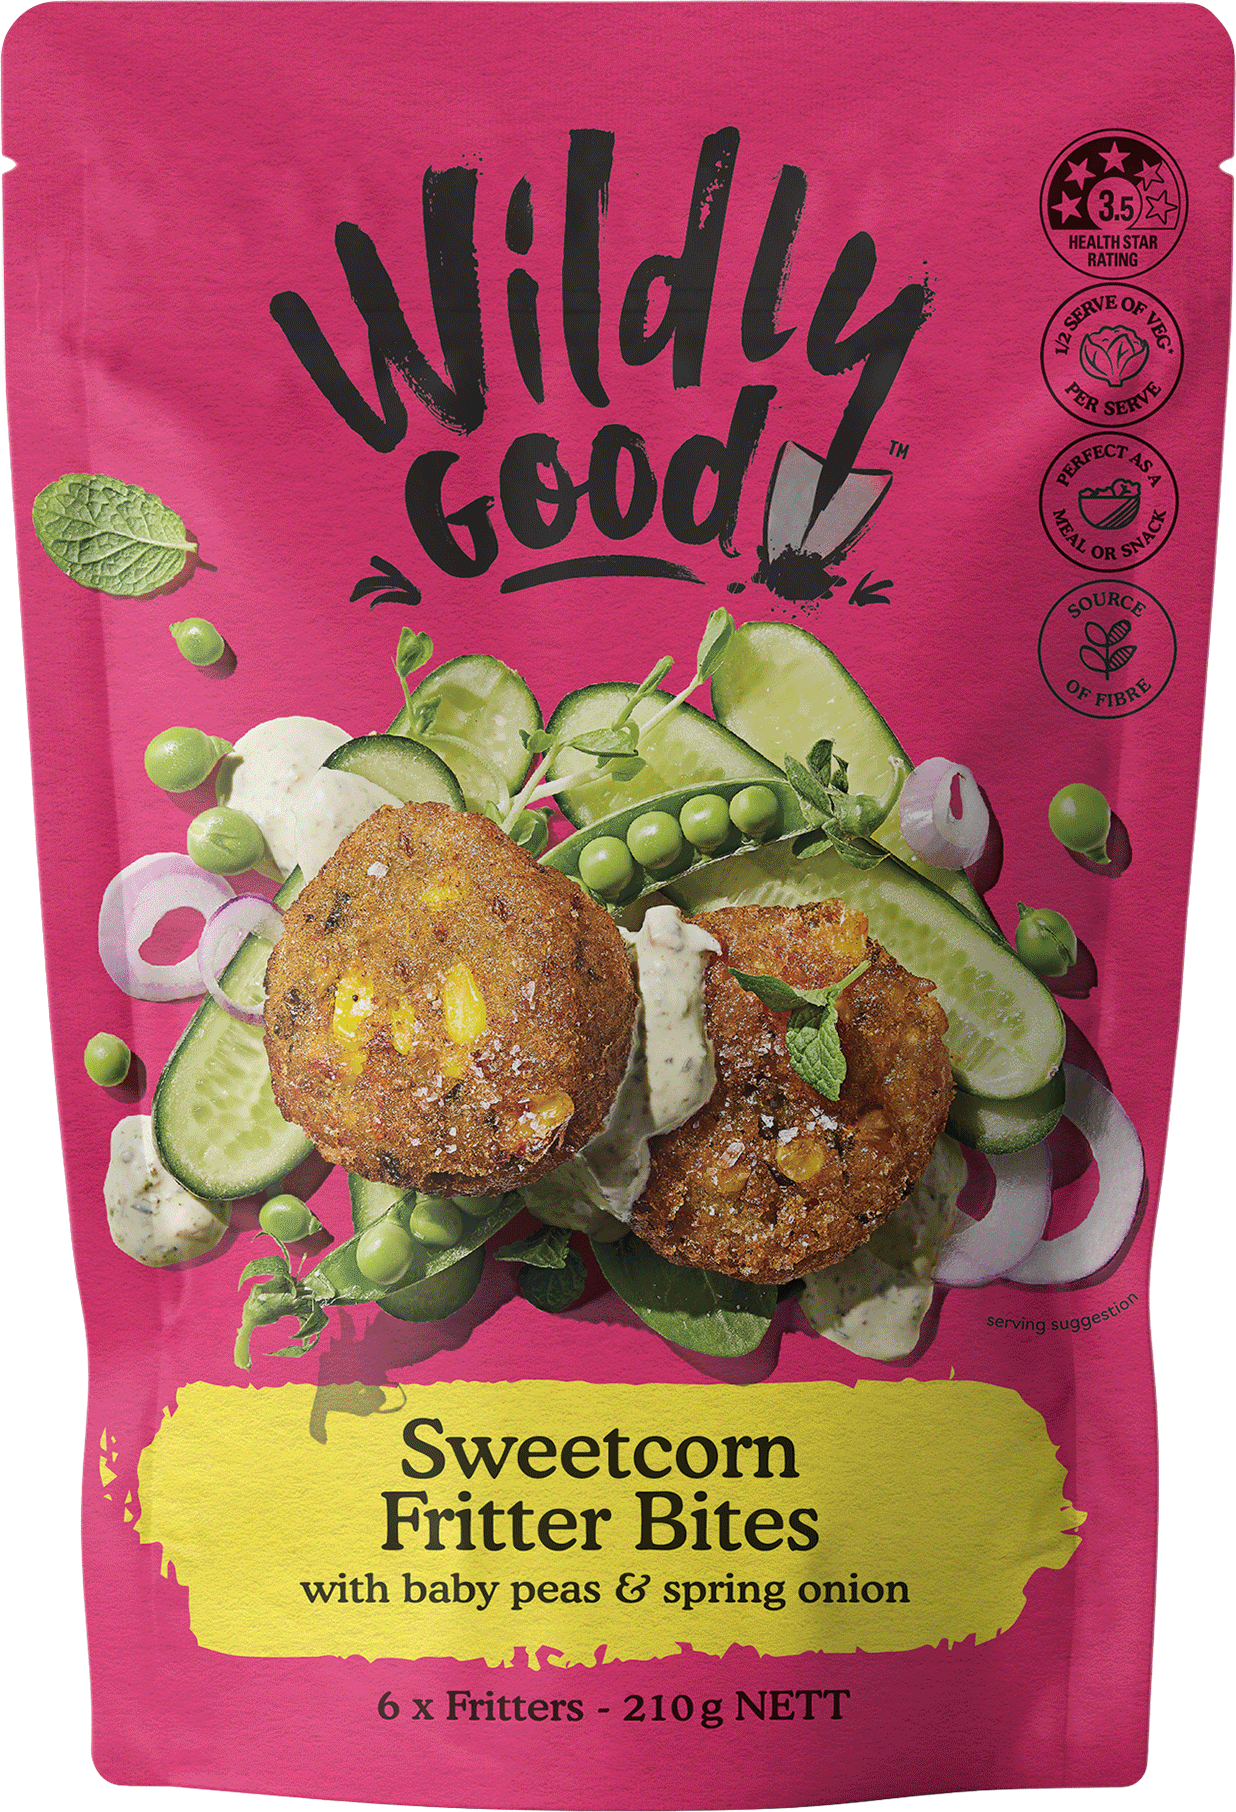 Wildly Good Sweetcorn Bites